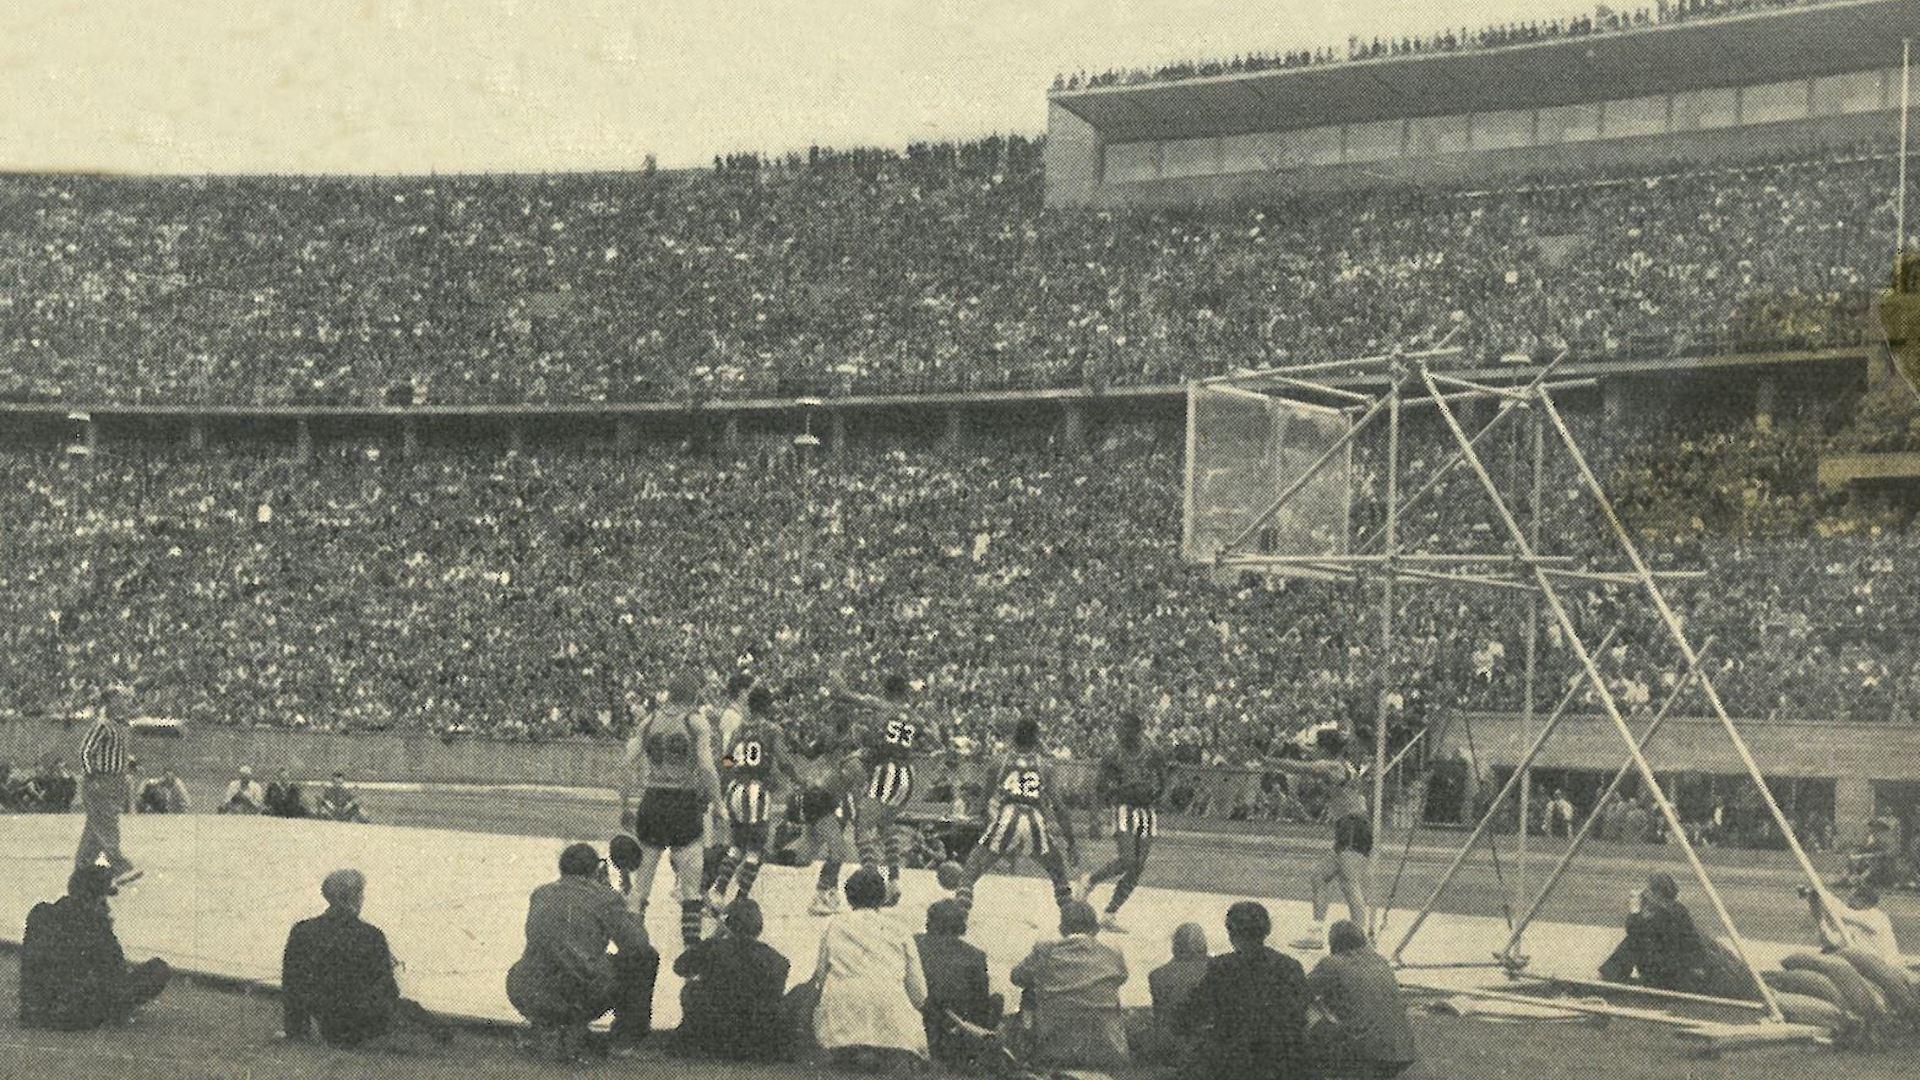 Les Harlem Globetrotters au Stade olympique de Berlin en 1951